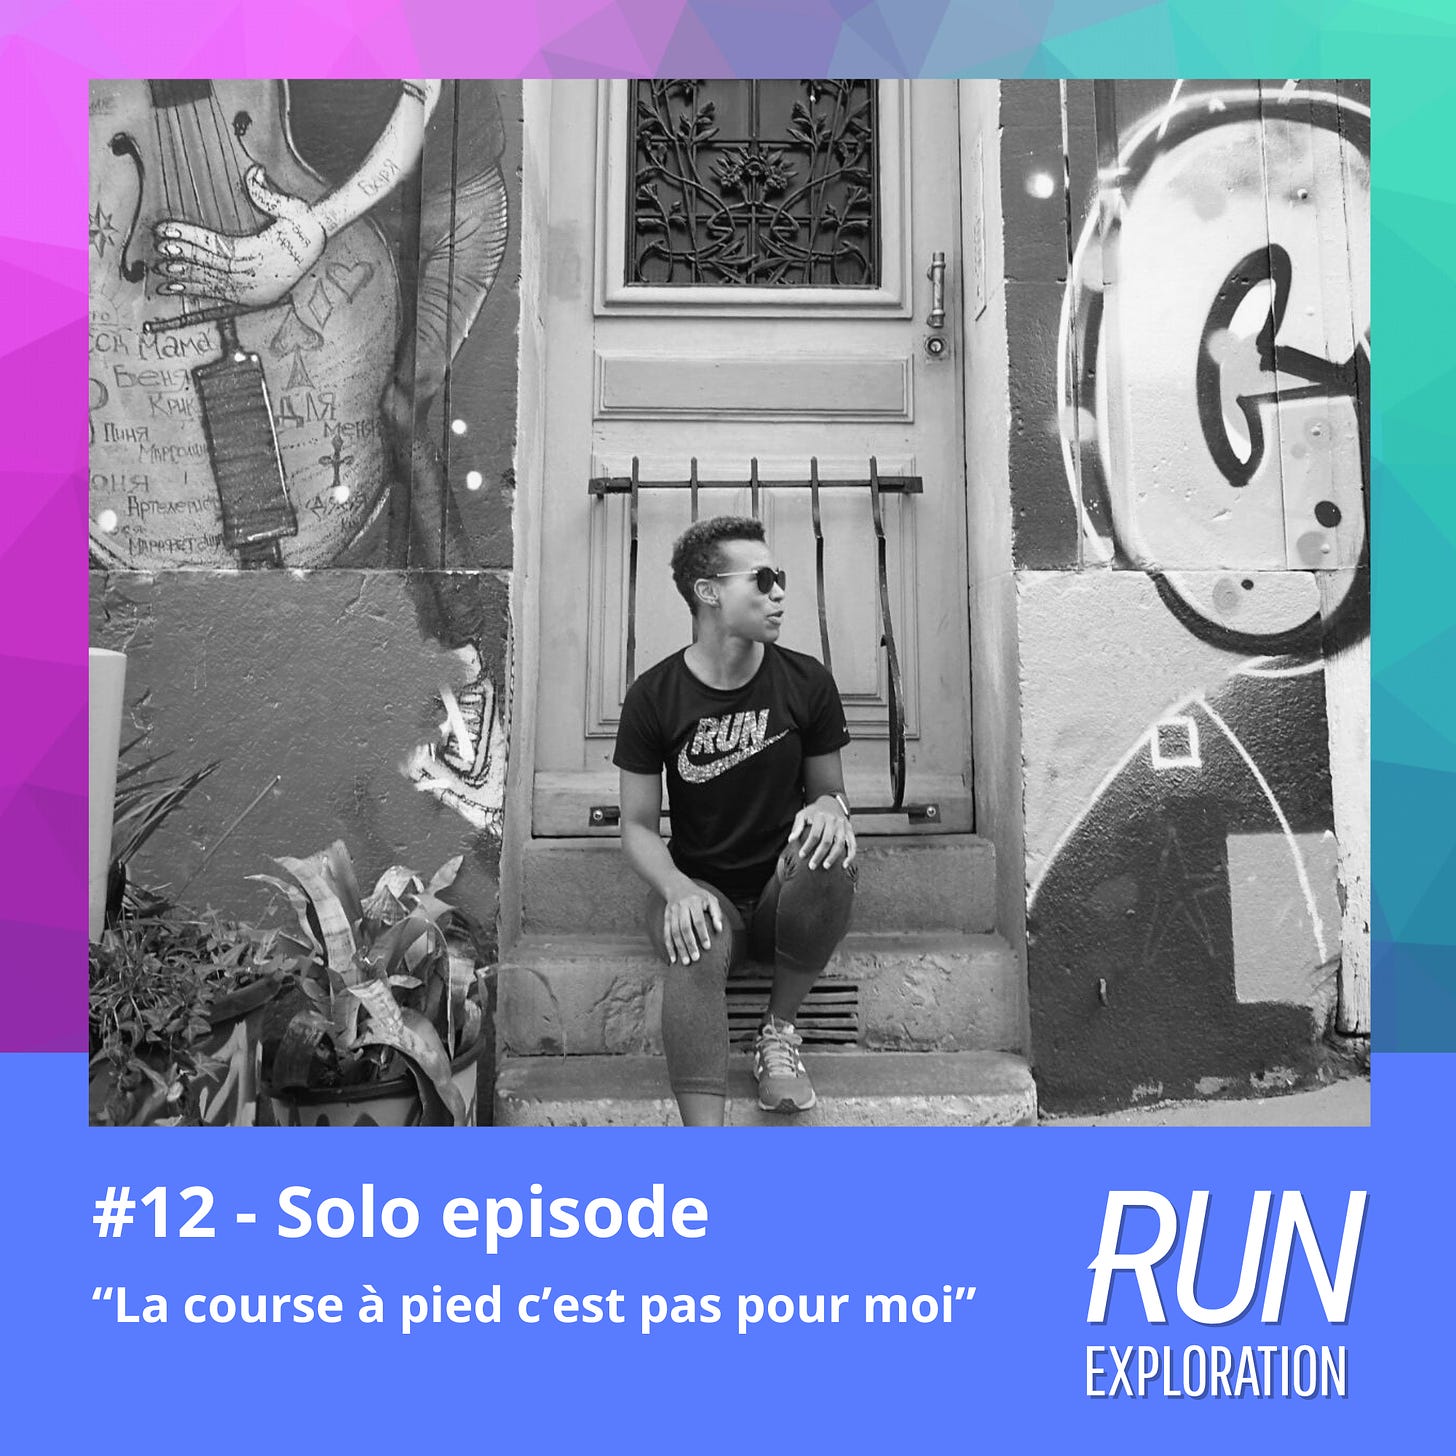 Episode 12 - "La course à pied c'est pas pour moi" 